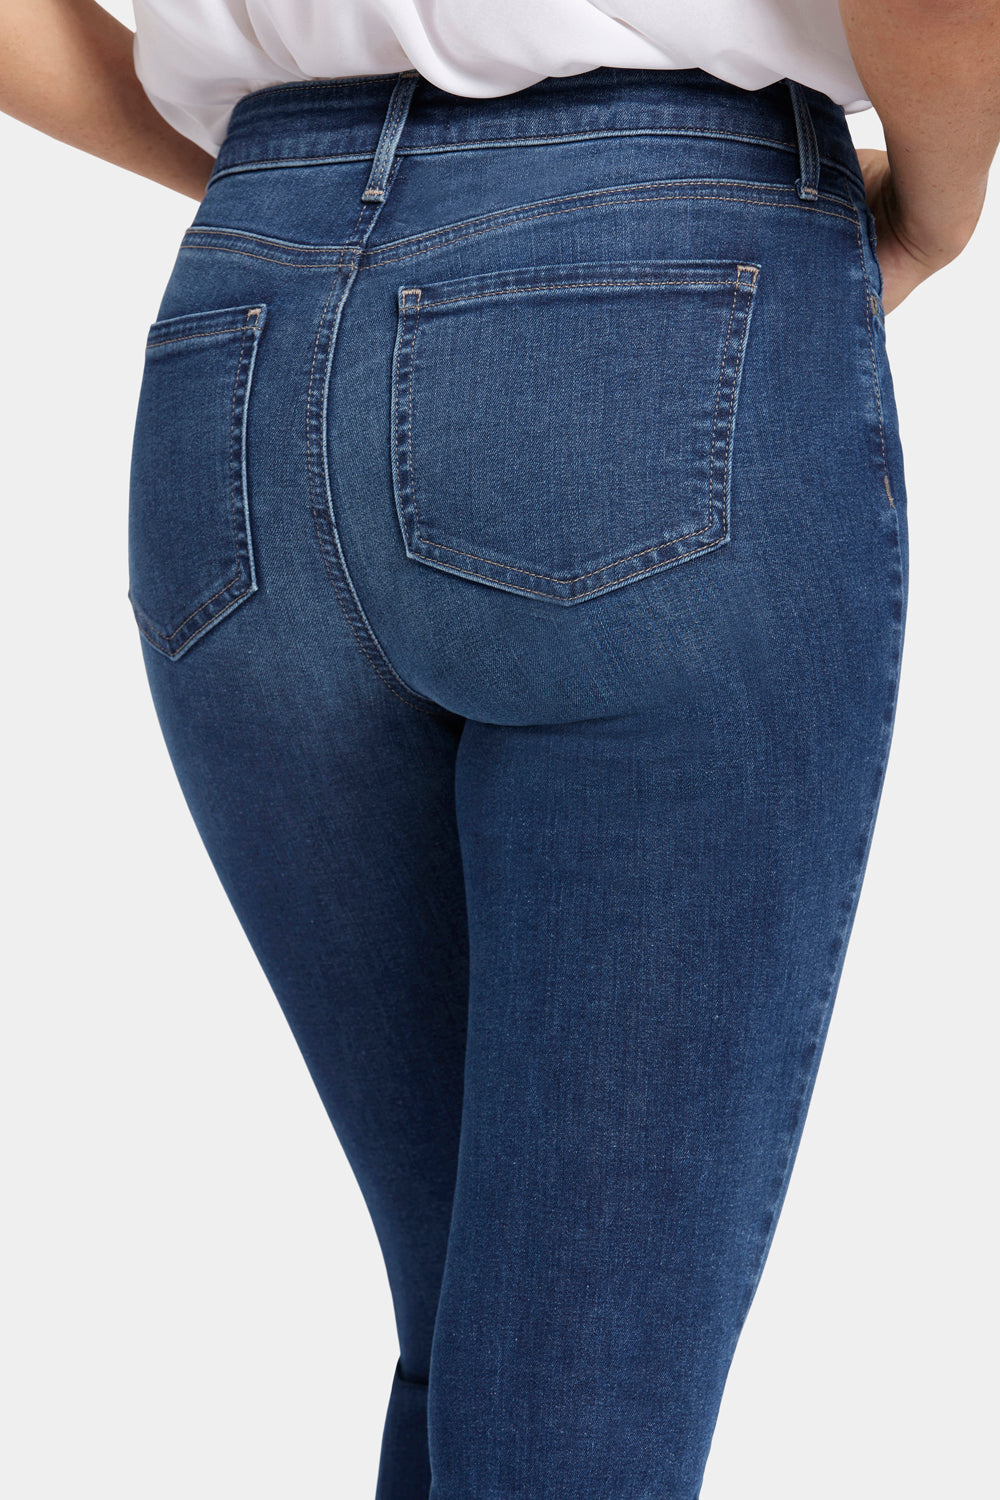 NYDJ Sheri Slim Jeans  - Crockett